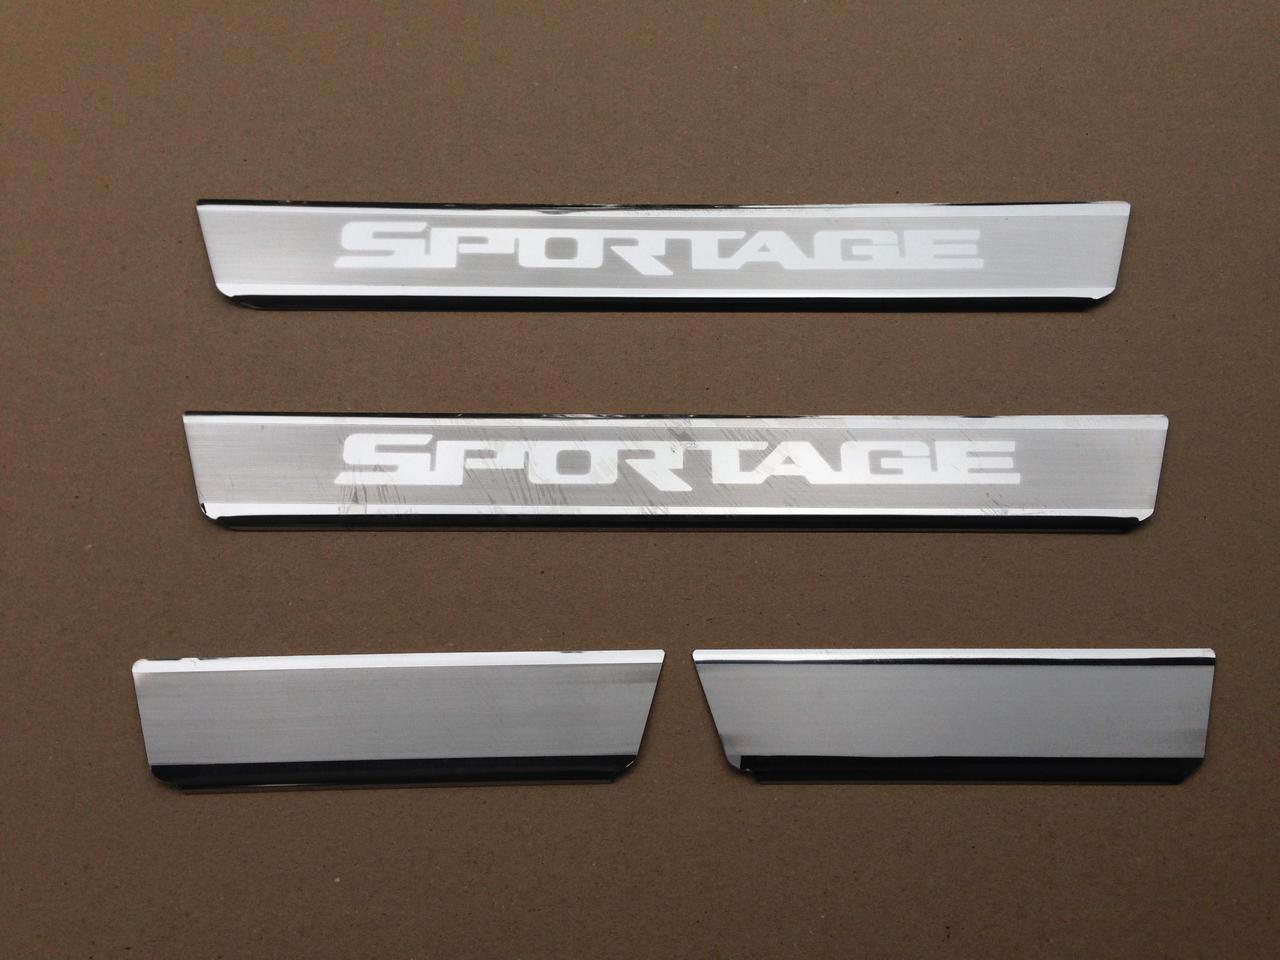 Накладки на пороги Kia Sportage R 2010- на метал